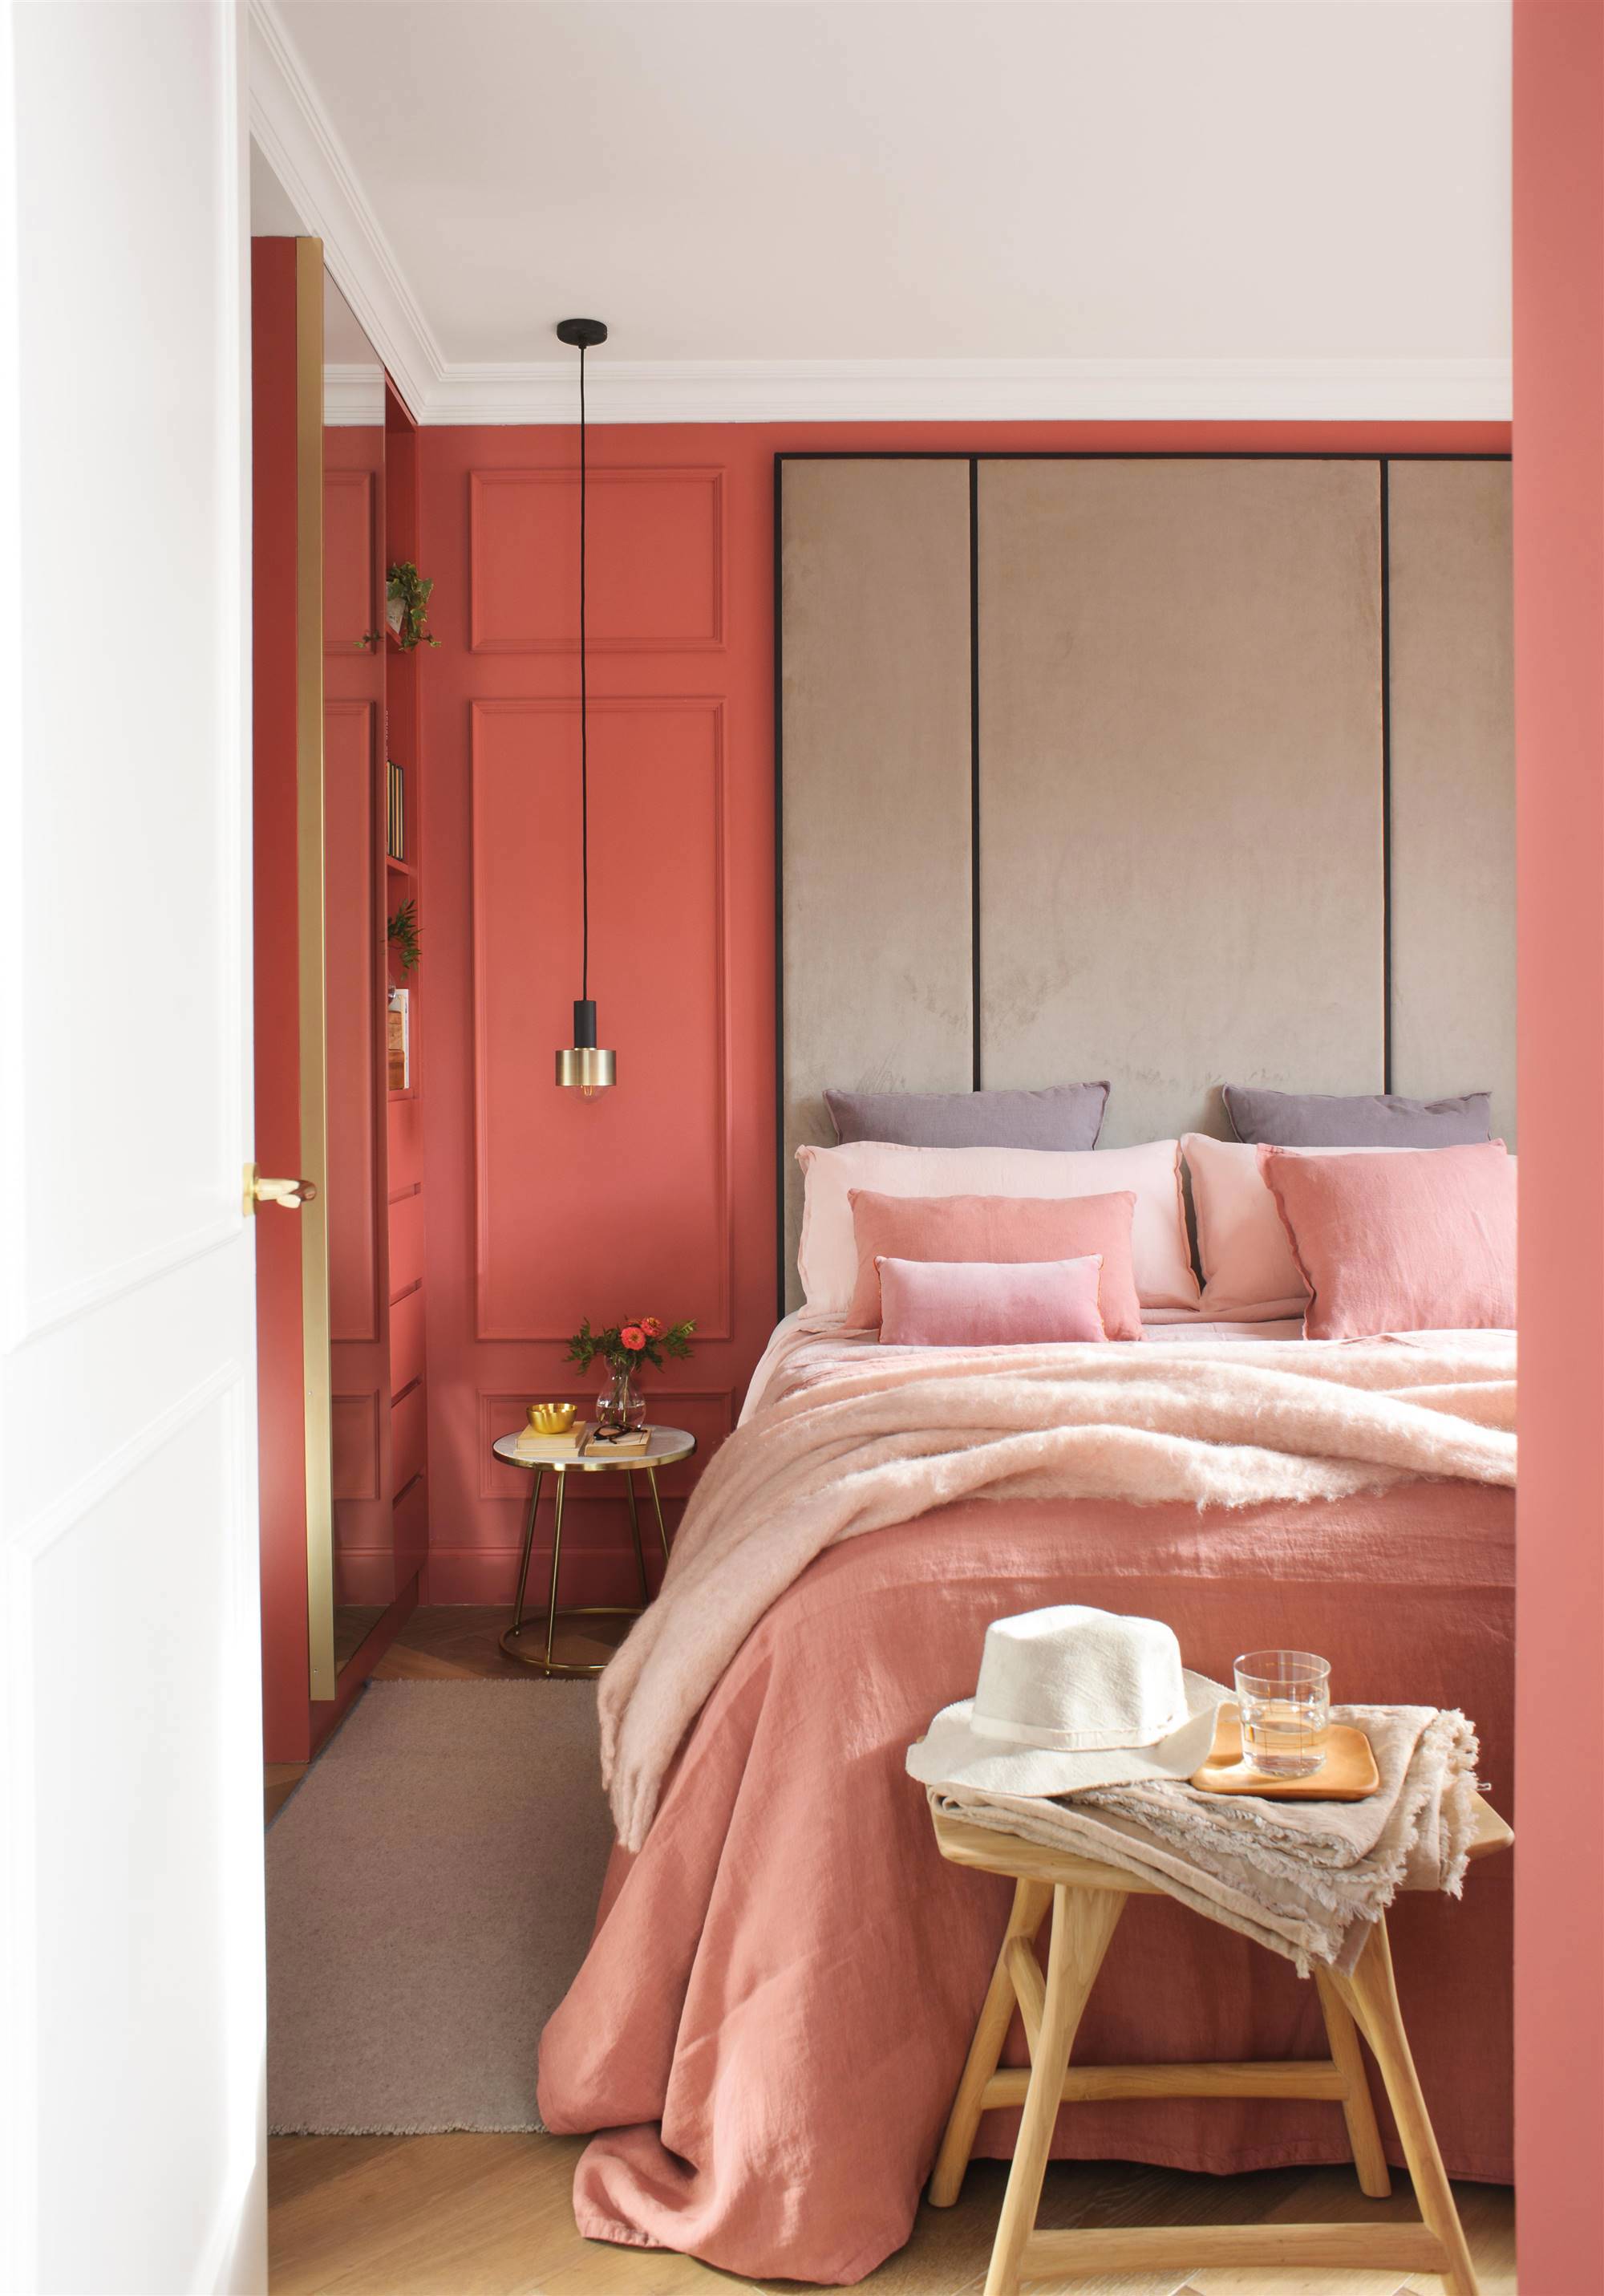 Dormitorio con pared de color arena rojiza con molduras.